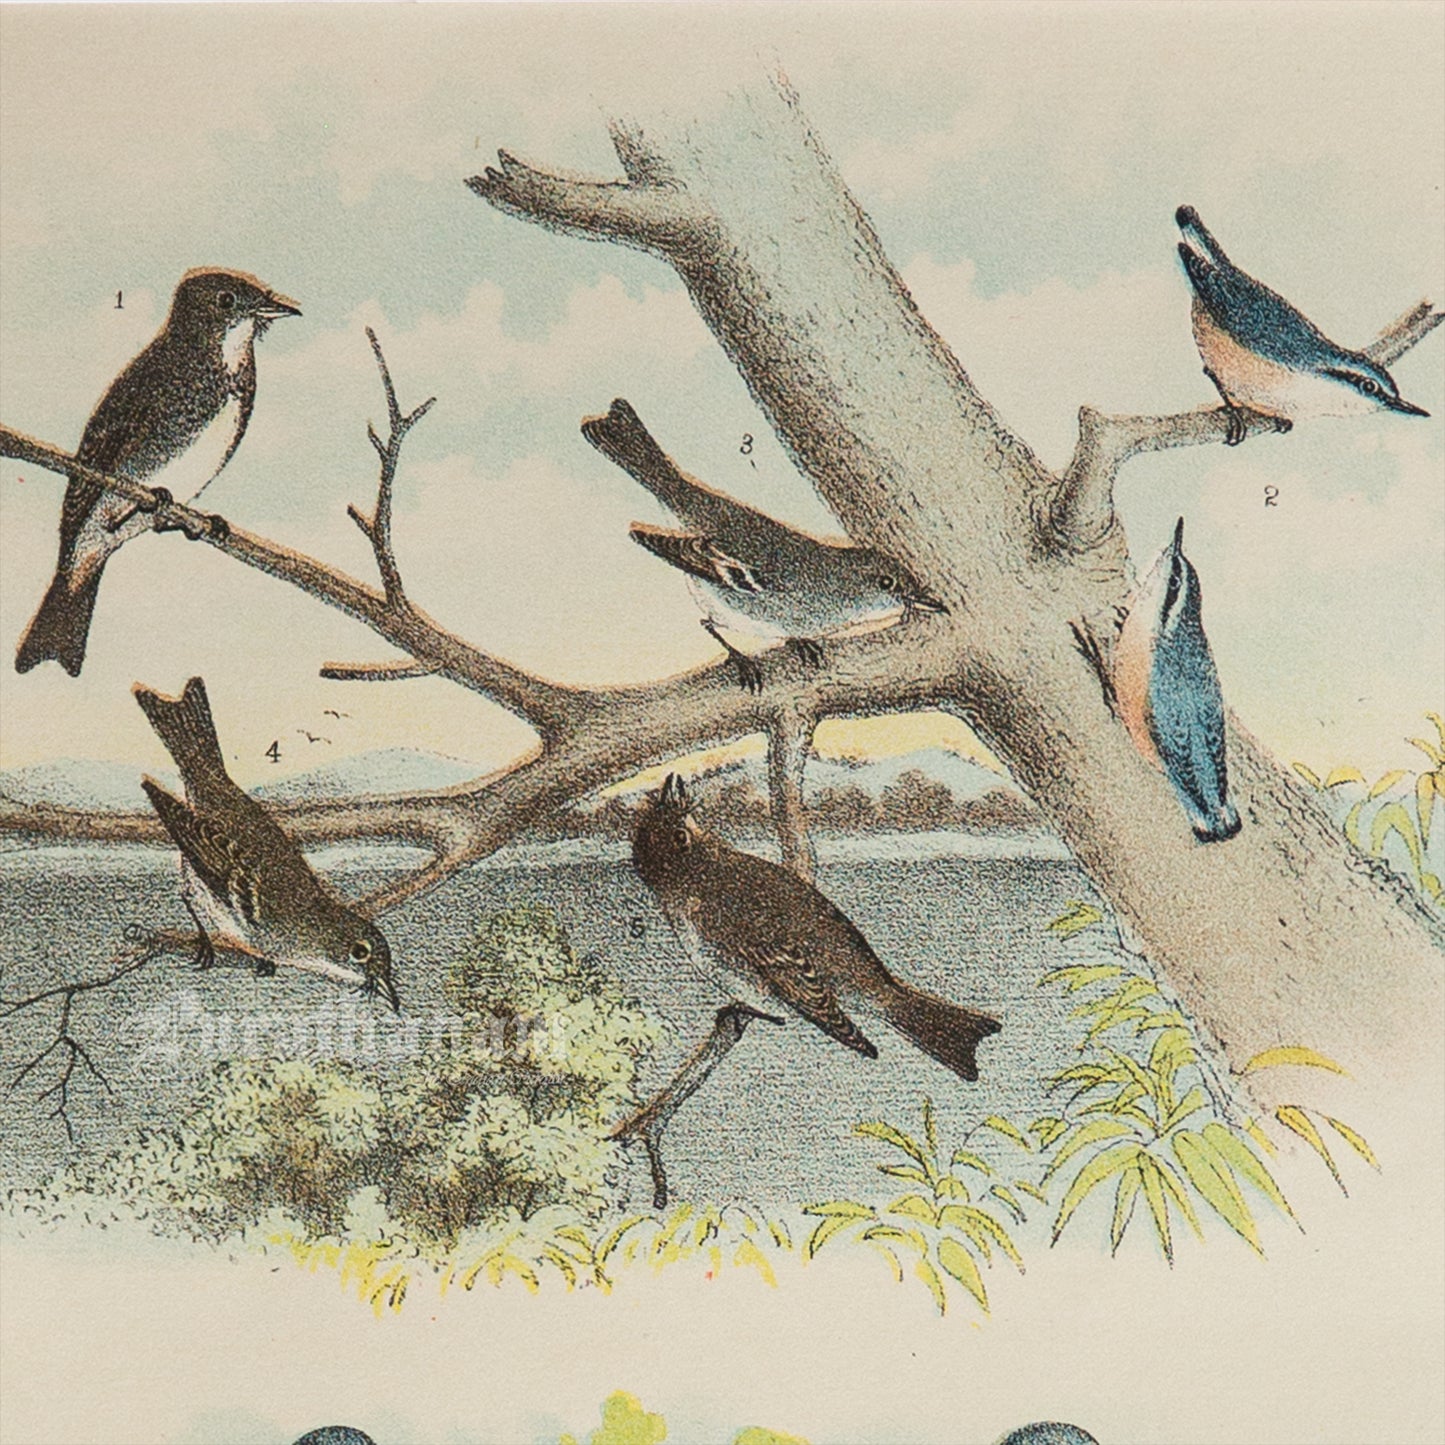 Bird - Chromo lithograph print (Plate - I ) by Theodore Jasper -  Bird Art / Avian Art